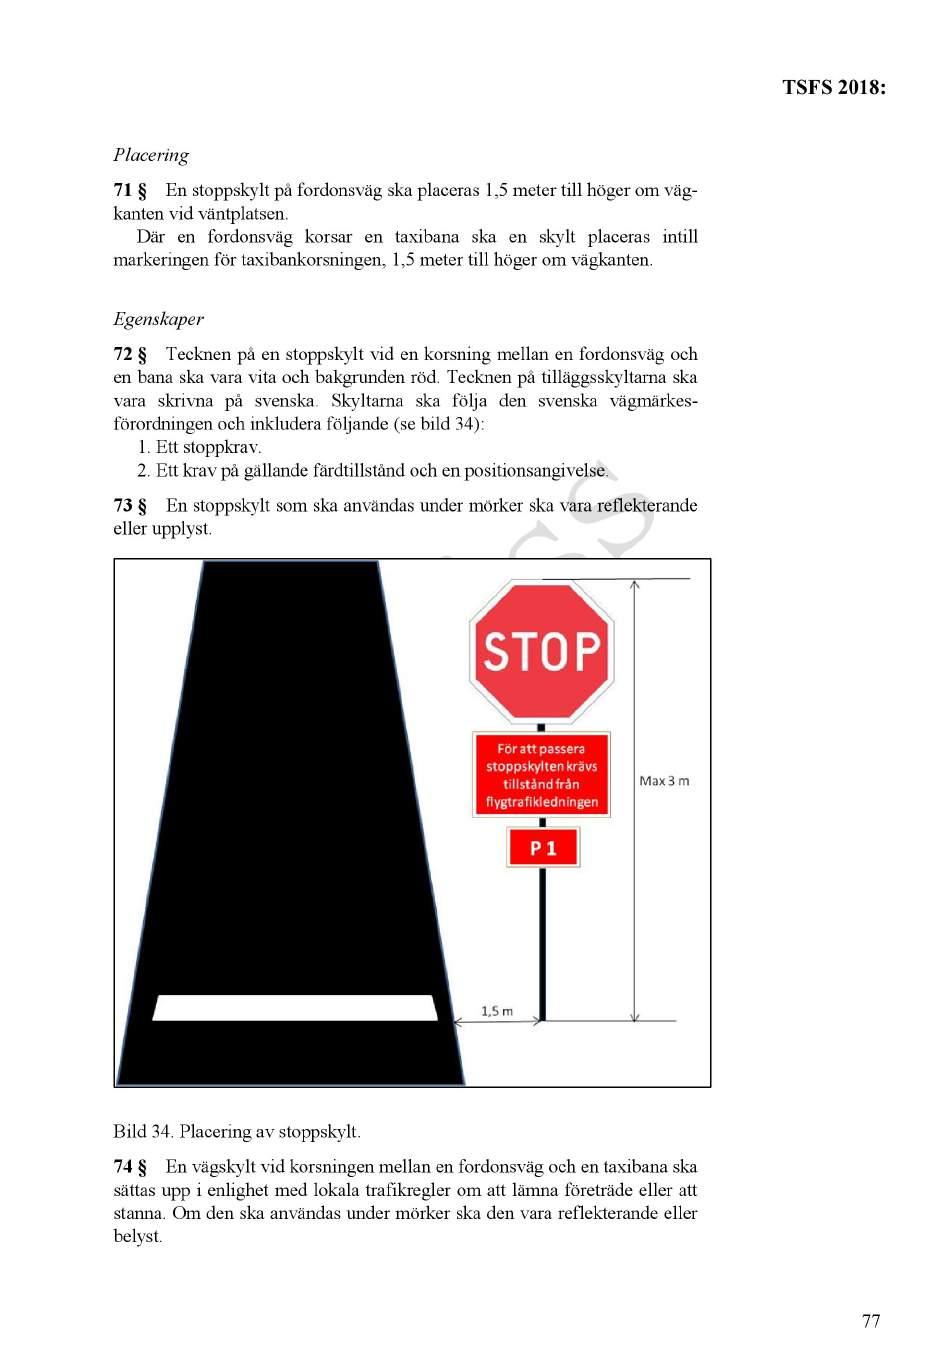 Placering 71 En stoppskylt på fordonsväg ska placeras 1,5 meter till höger om väg - kanten vid väntplatsen.